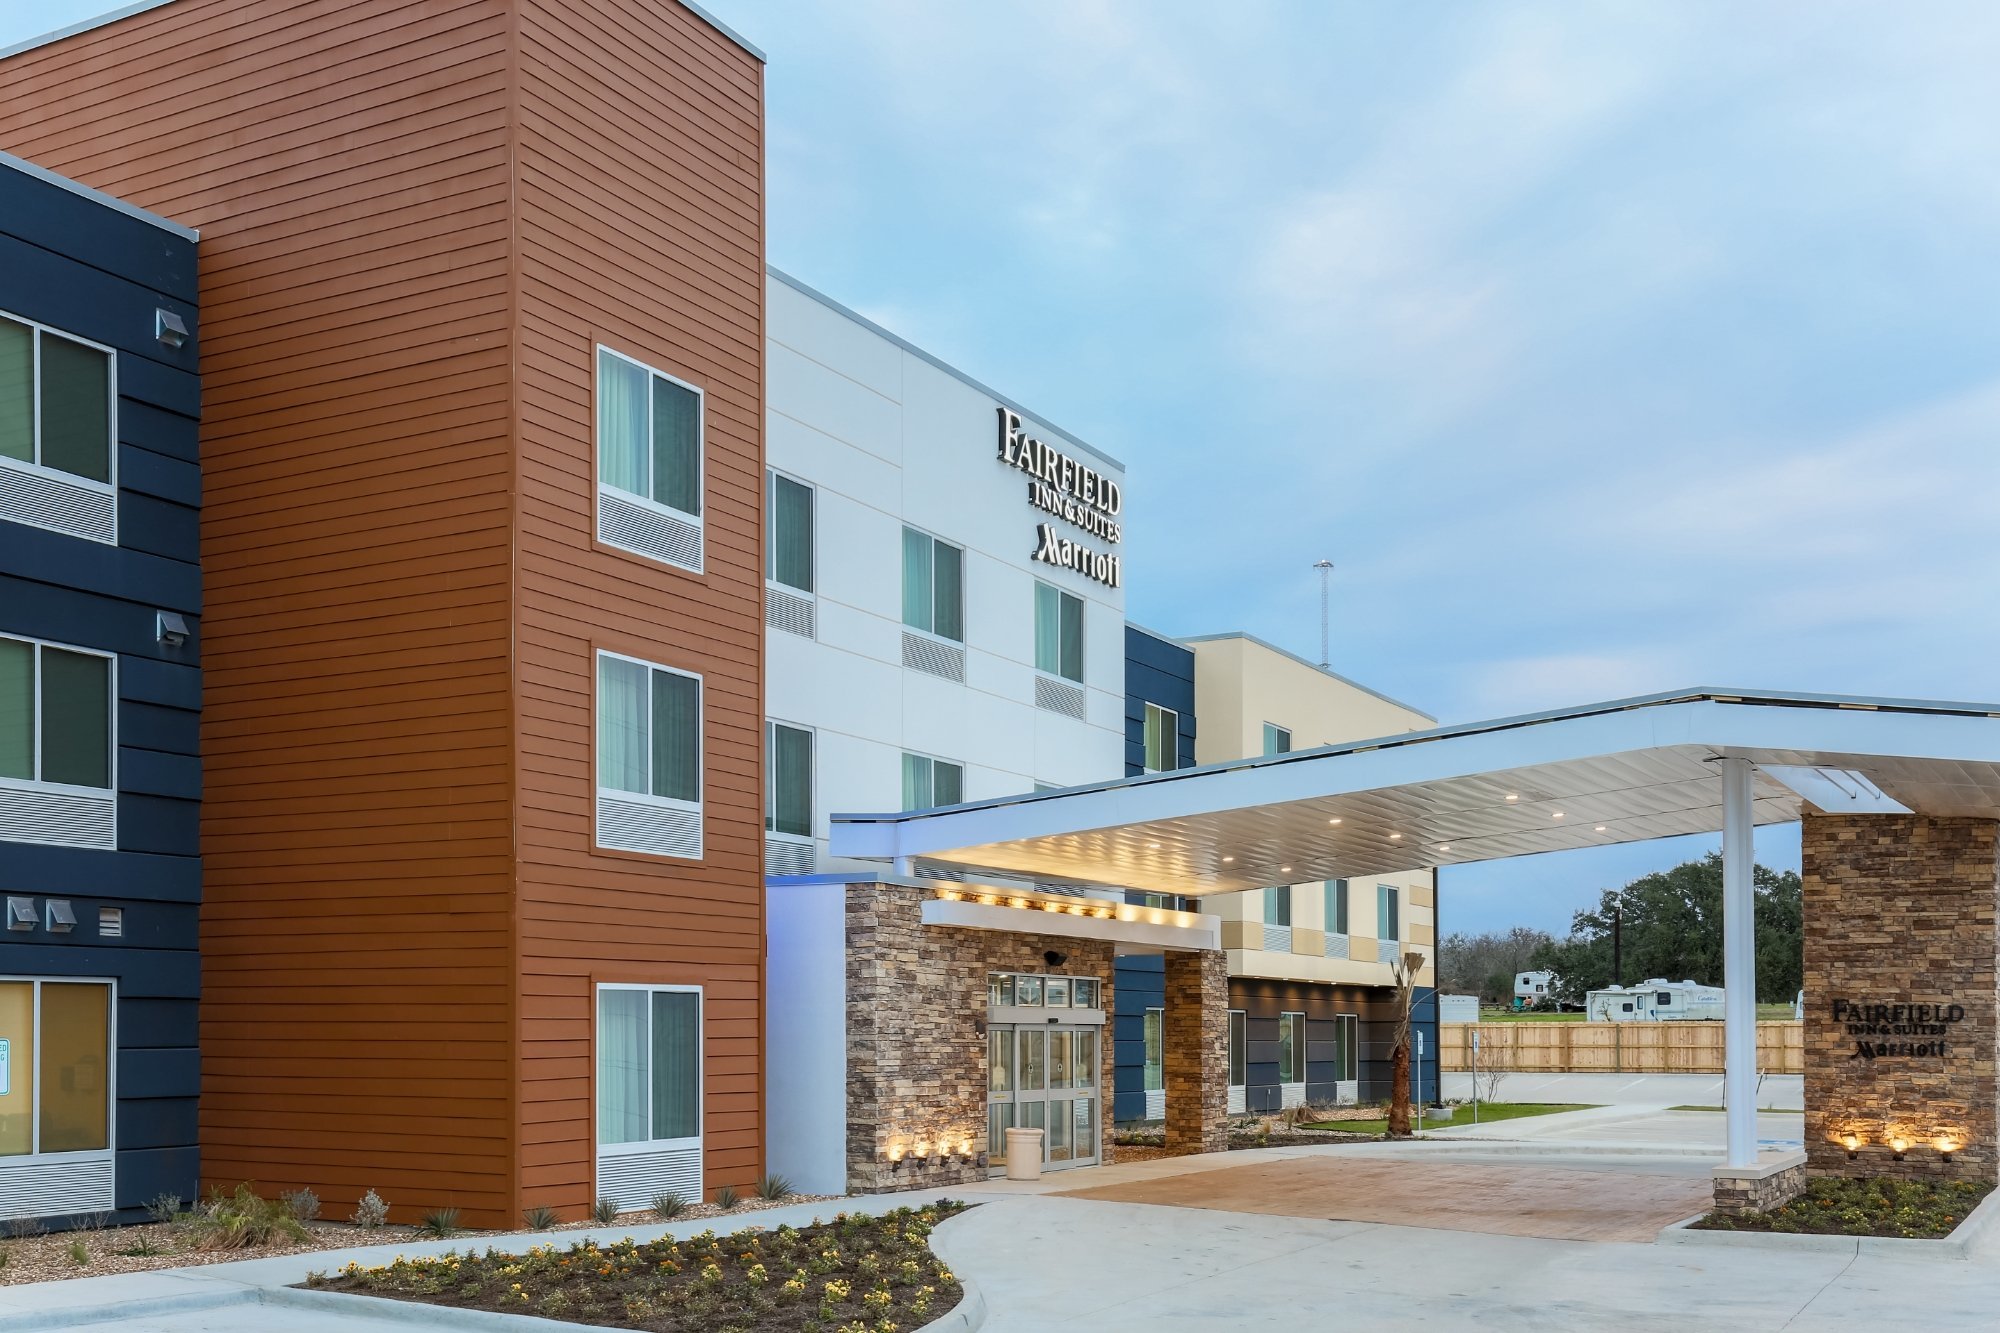 Photo of Fairfield Inn & Suites Cuero, Cuero, TX